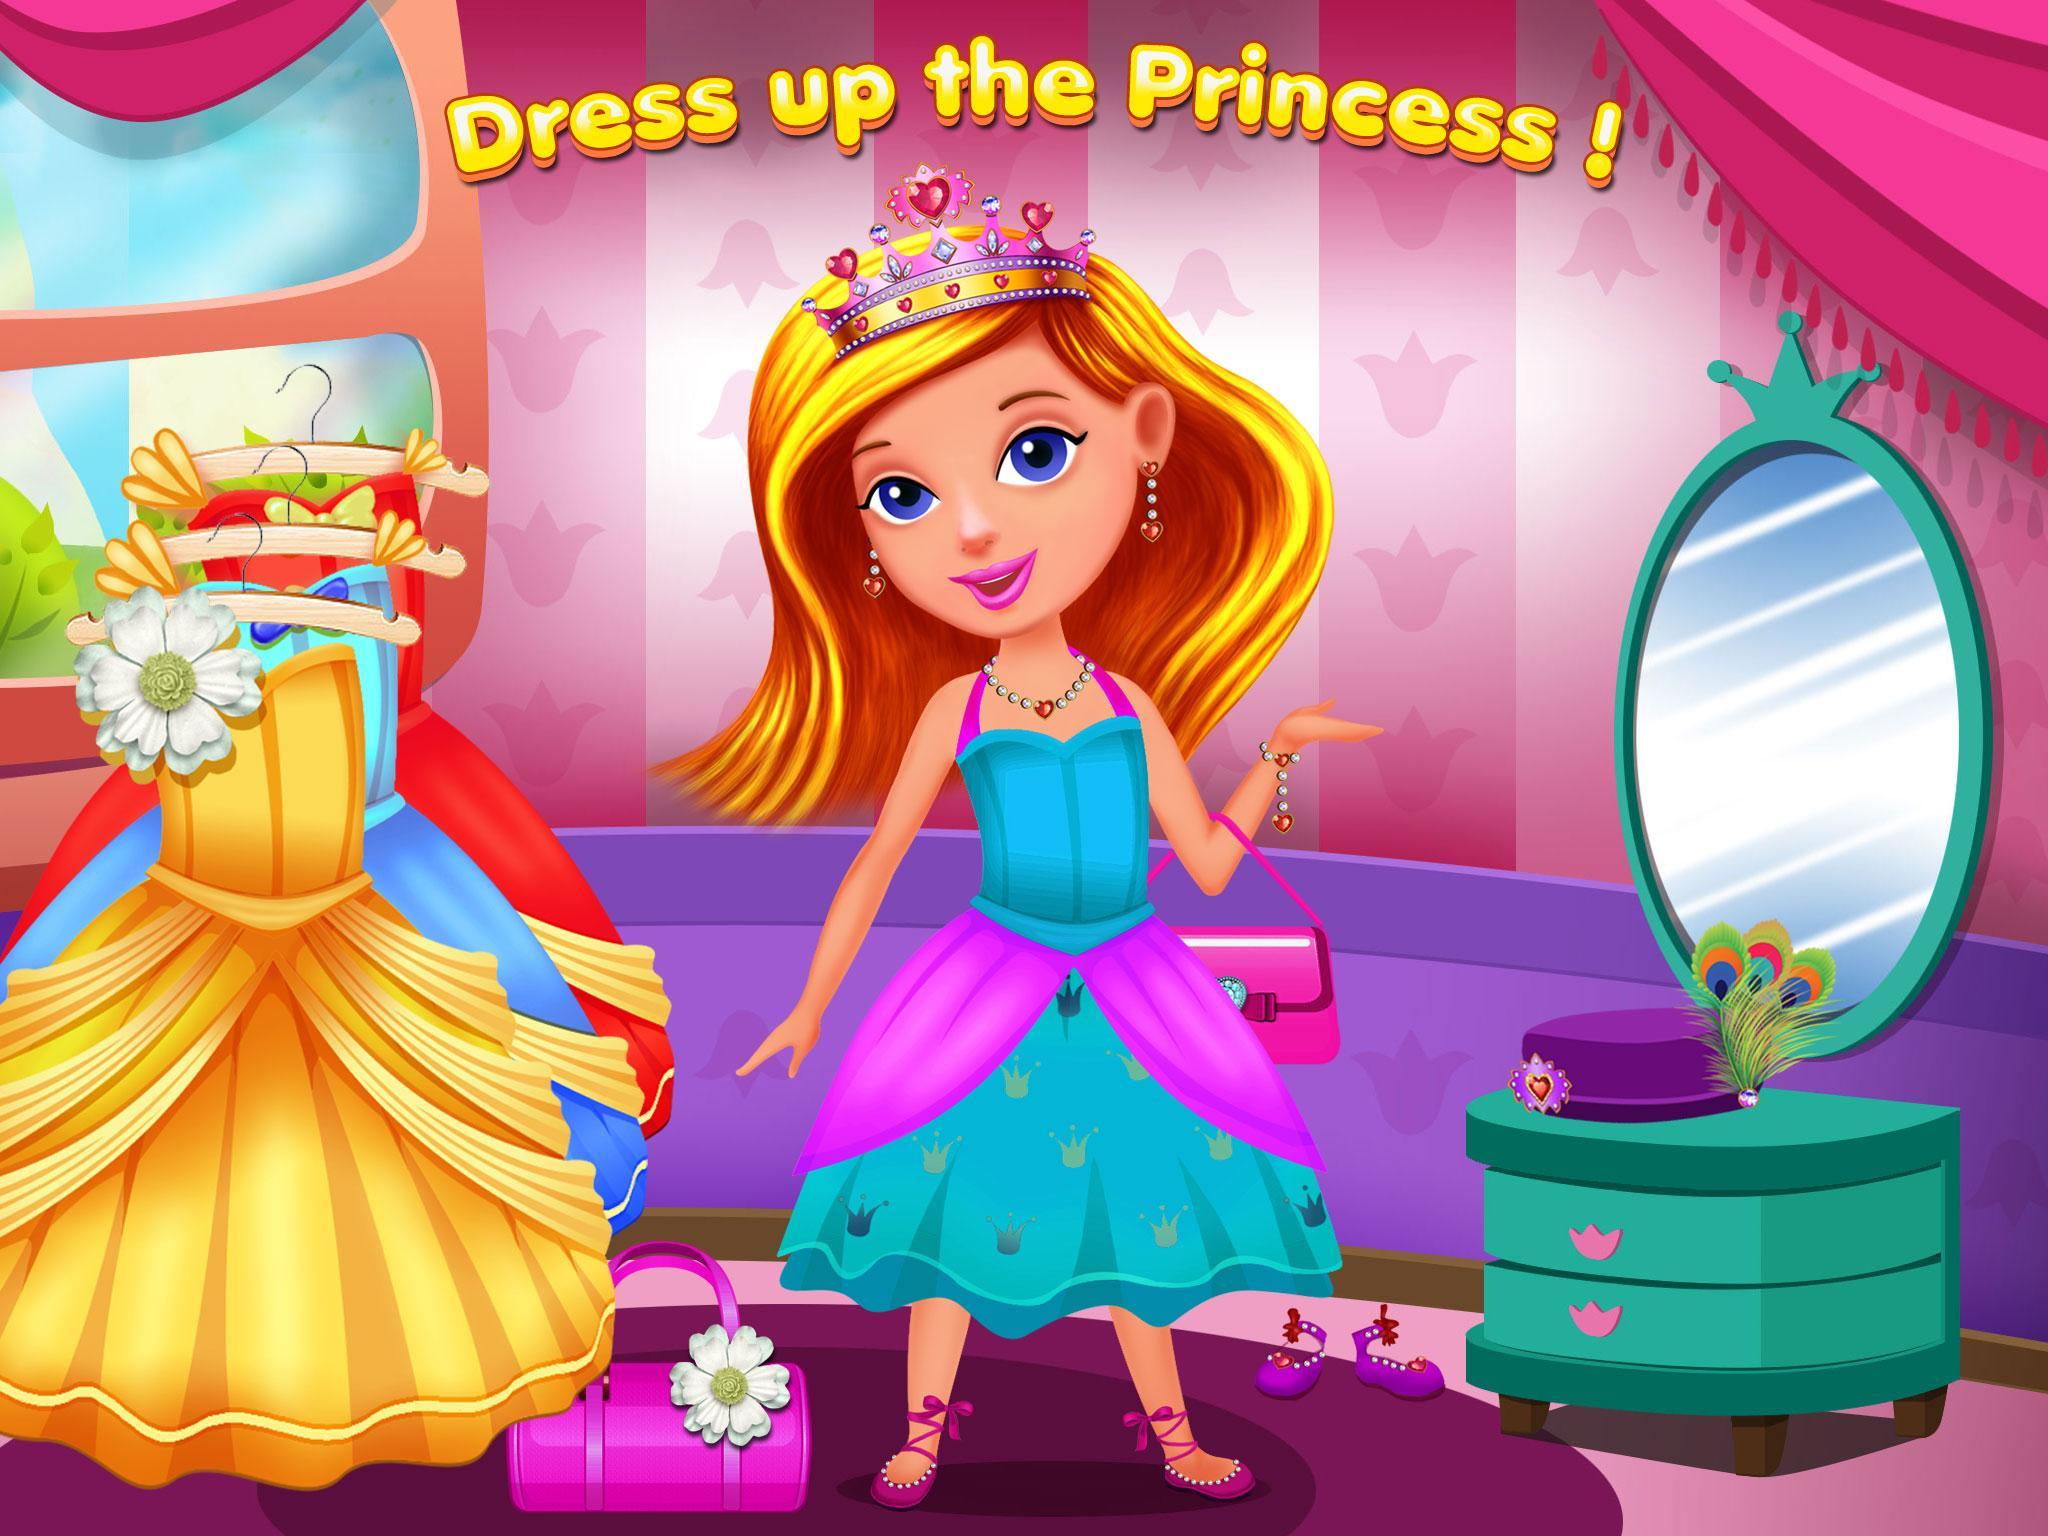 Игра принцесса 1. Игра замок принцесс\ переделки. Принцесса Пич. Игры для девочек 5 лет мебель и принцессы в замке. Как можно поиграть в принцесс дома.